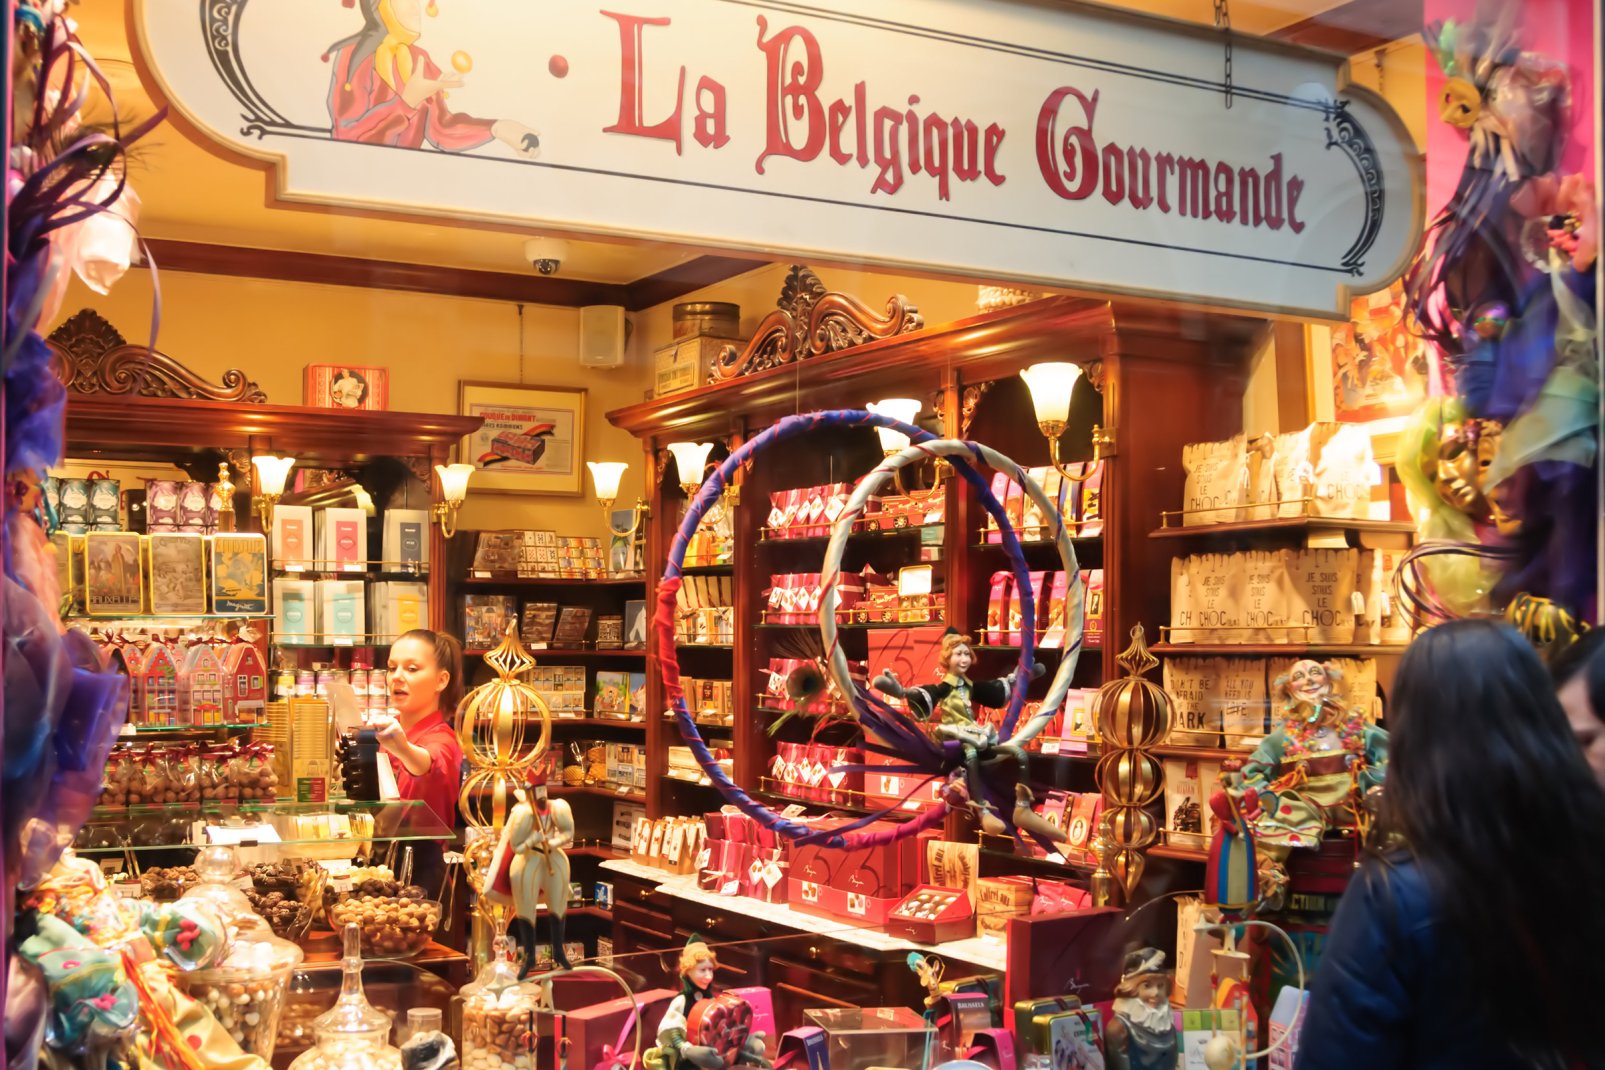 Cette boutique remarquable est spécialiste du chocolat belge mais aussi de confiseries aussi riches et variées que la praline, le cuberdon, la pâte de fruits, le massepain, la guimauve, ou le melo cake. On y trouve aussi les étonnants outils en chocolat.